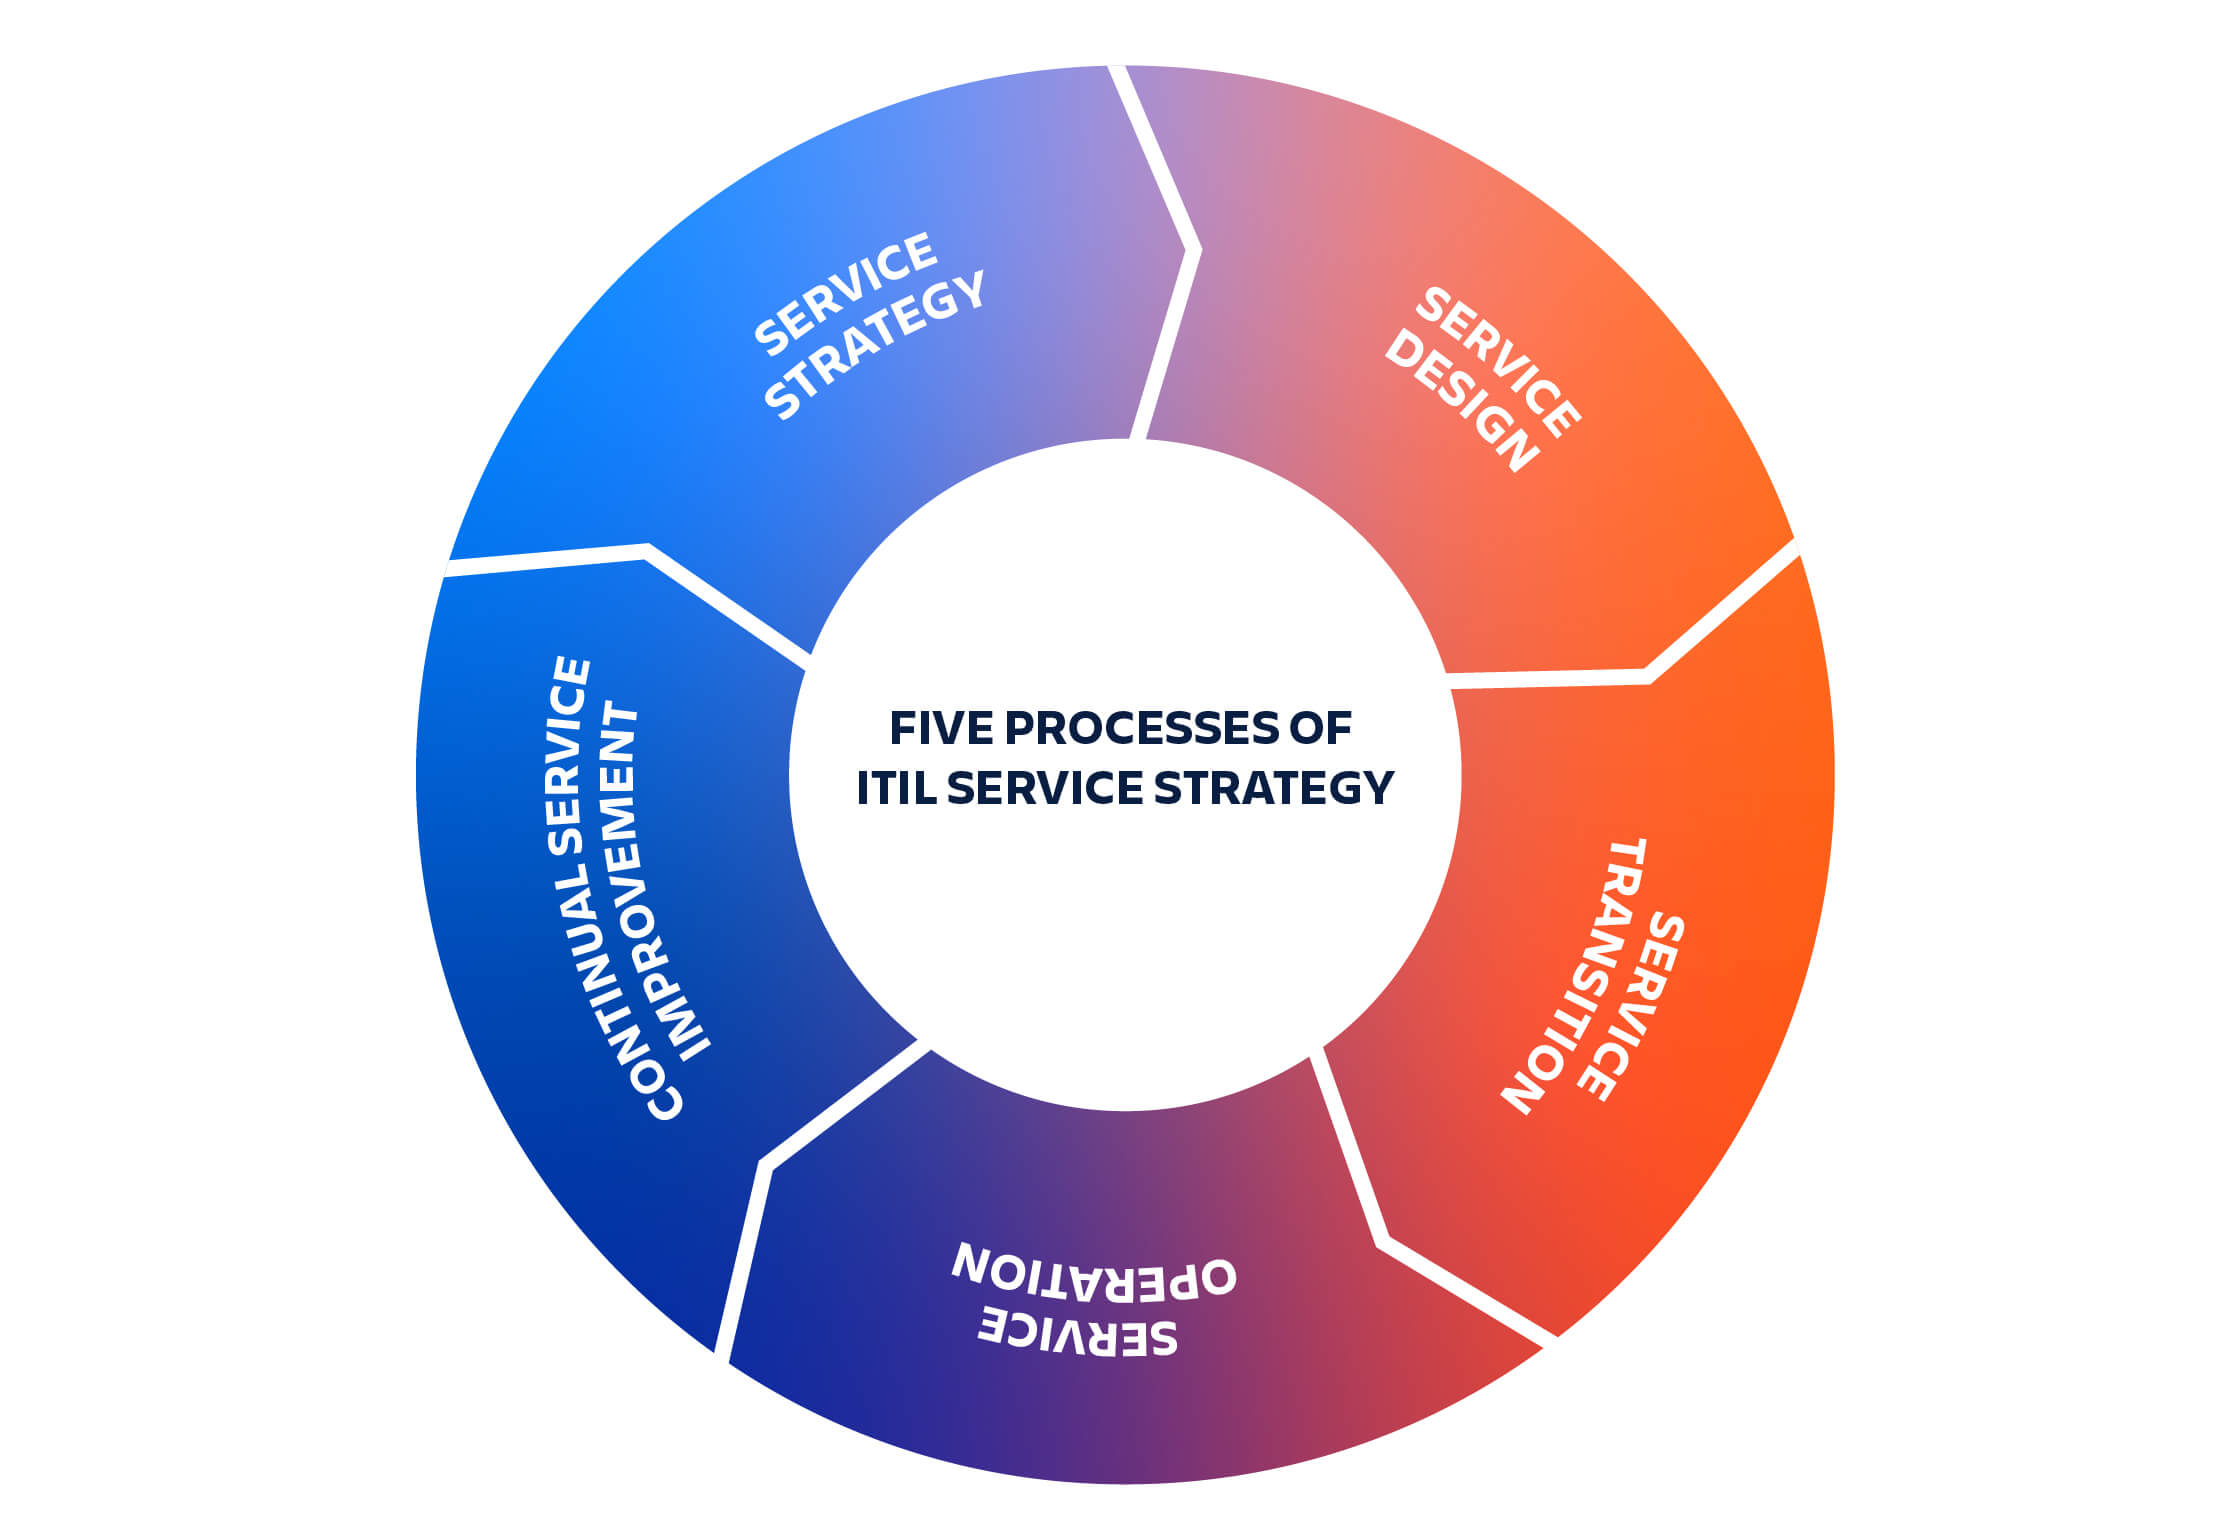 I cinque processi della strategia dei servizi ITIL: la strategia dei servizi sfocia nella progettazione dei servizi, che sfocia nella transizione dei servizi, che sfocia nel funzionamento dei servizi, che sfocia nel miglioramento continuo dei servizi